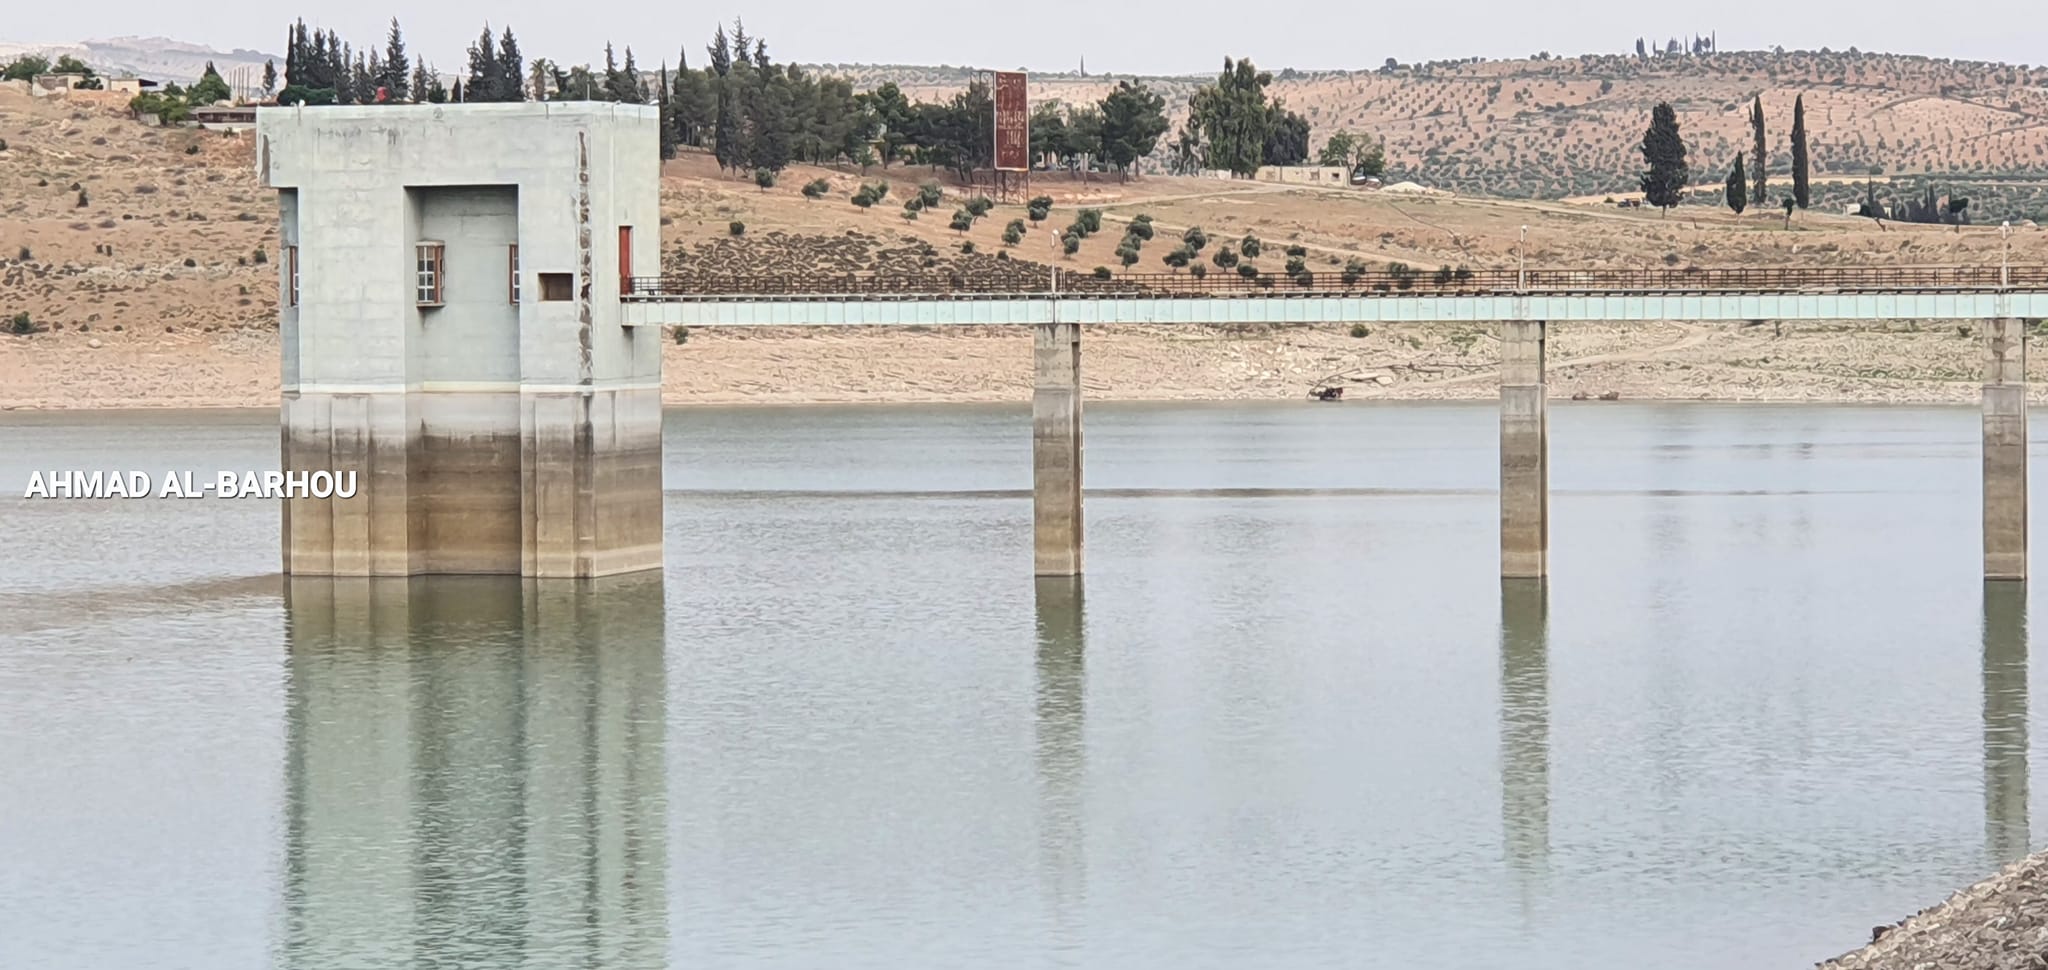 بسبب قلة الأمطار وسياسات الاحتلال... الجفاف يجتاح منطقة عفرين المحتلة وتراجع في المساحات المزروعة